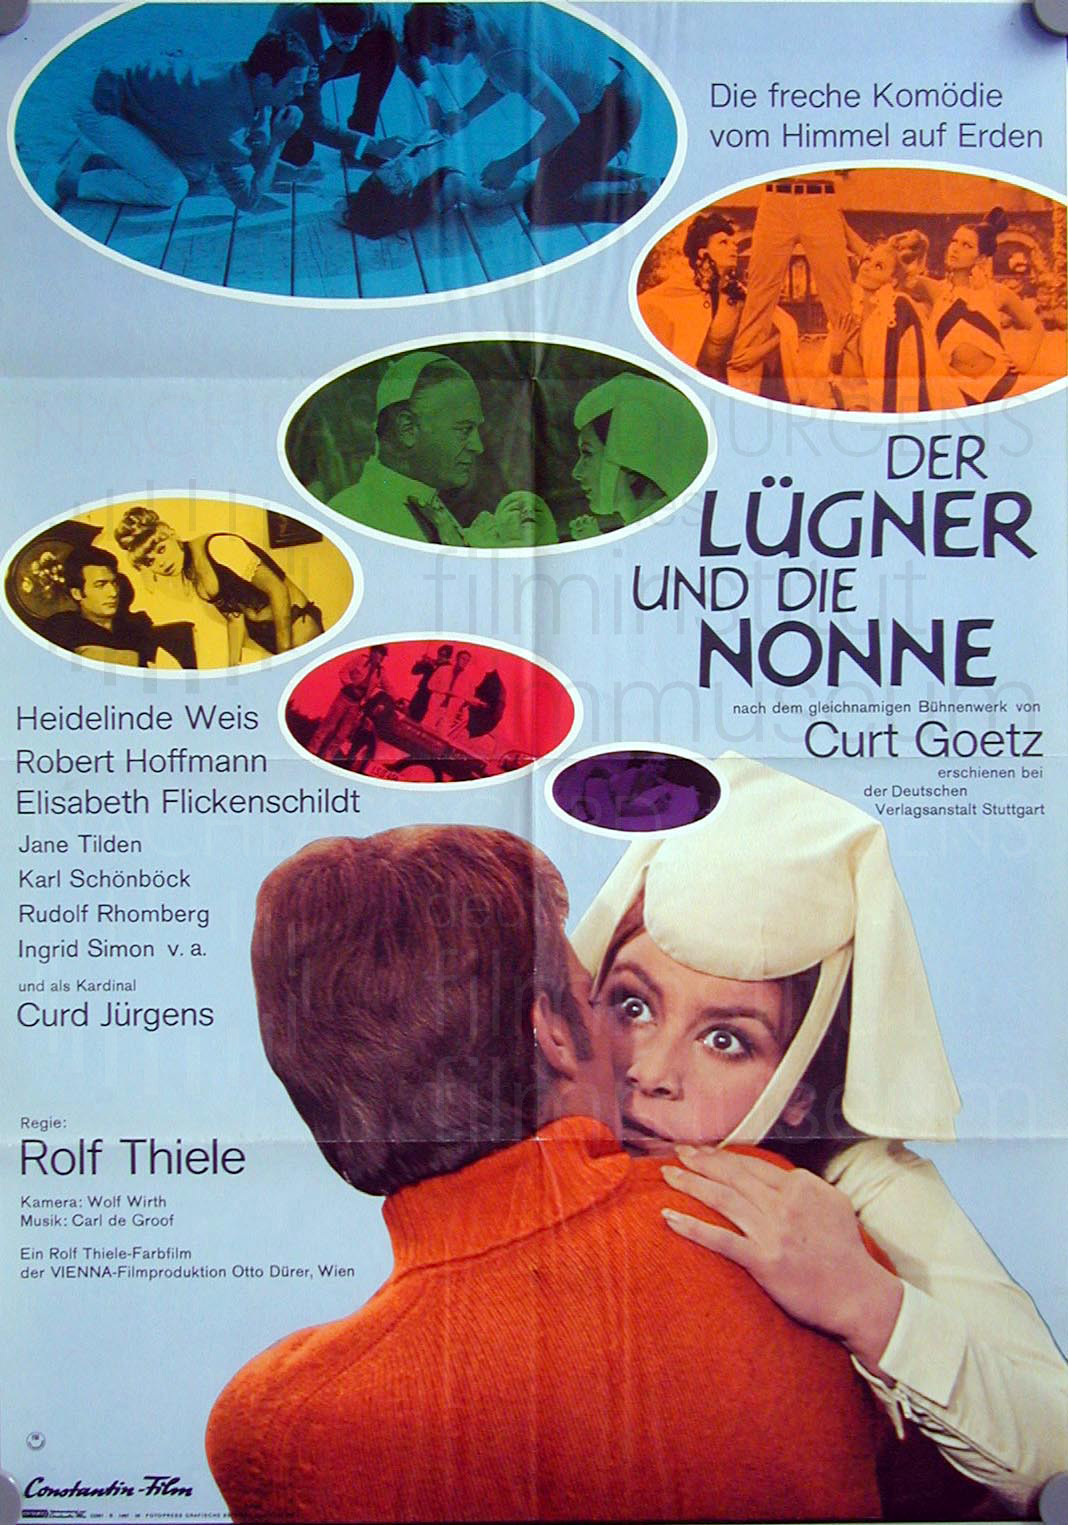 DER LÜGNER UND DIE NONNE (1967)